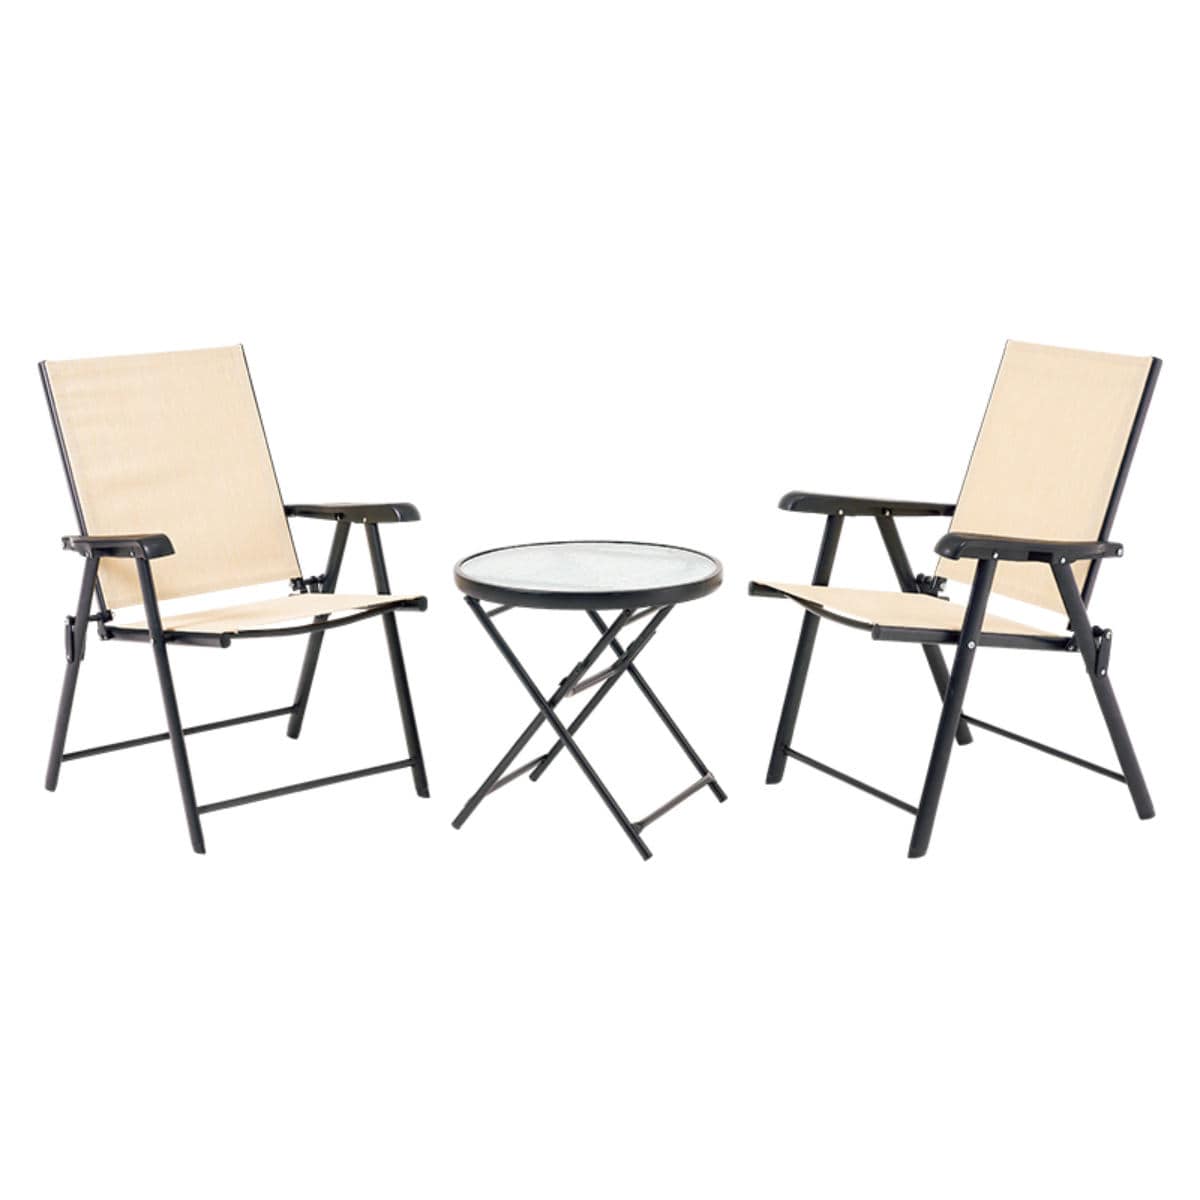 【色: ブラック】ガーデンテーブルセット 3点 折りたたみ チェア2脚 テーブル